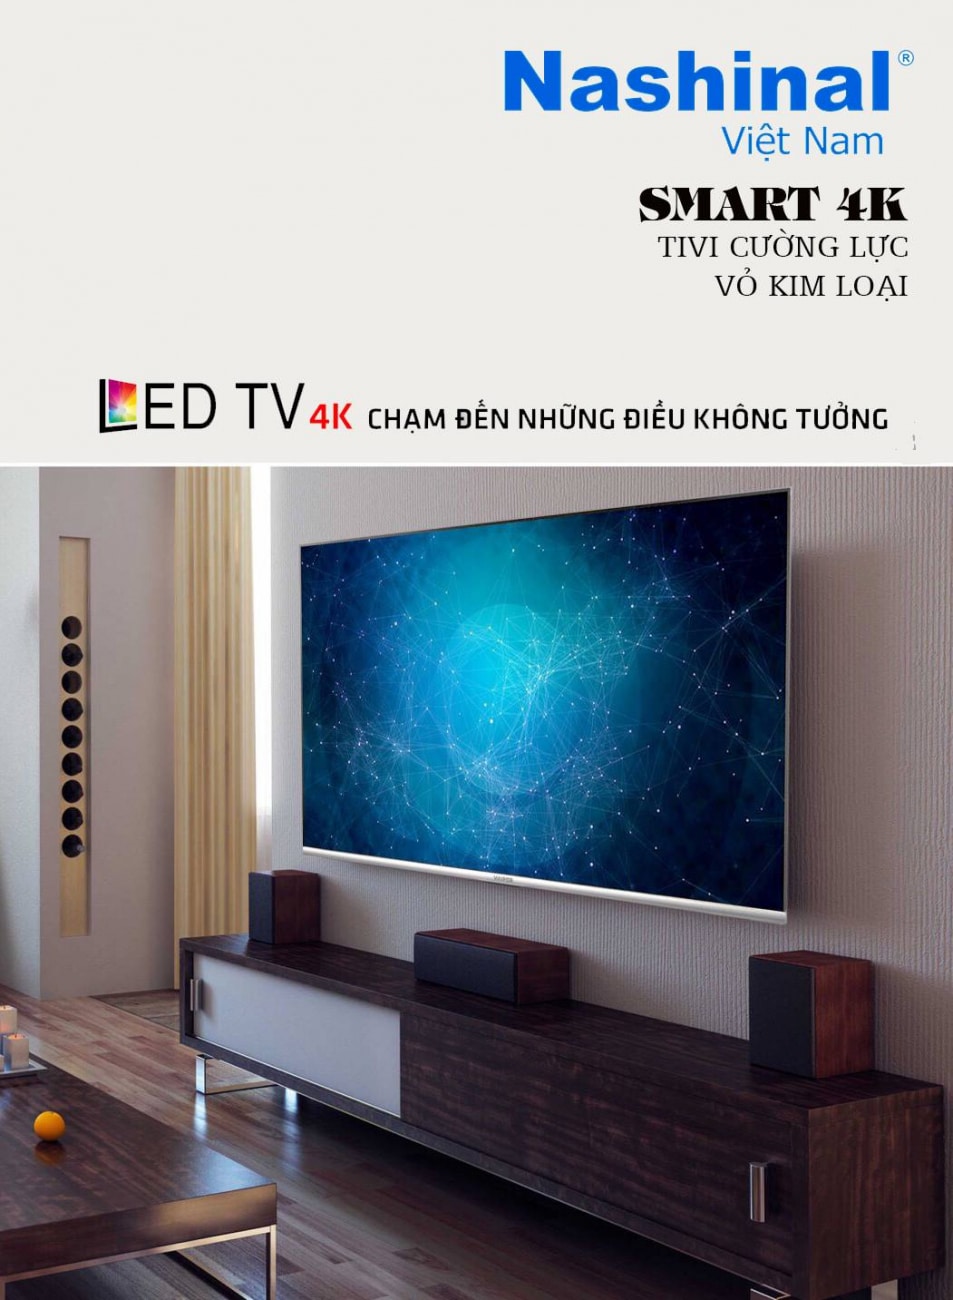 Lên ý tưởng, thiết kế, chụp hình sản phẩm LED TV 4K